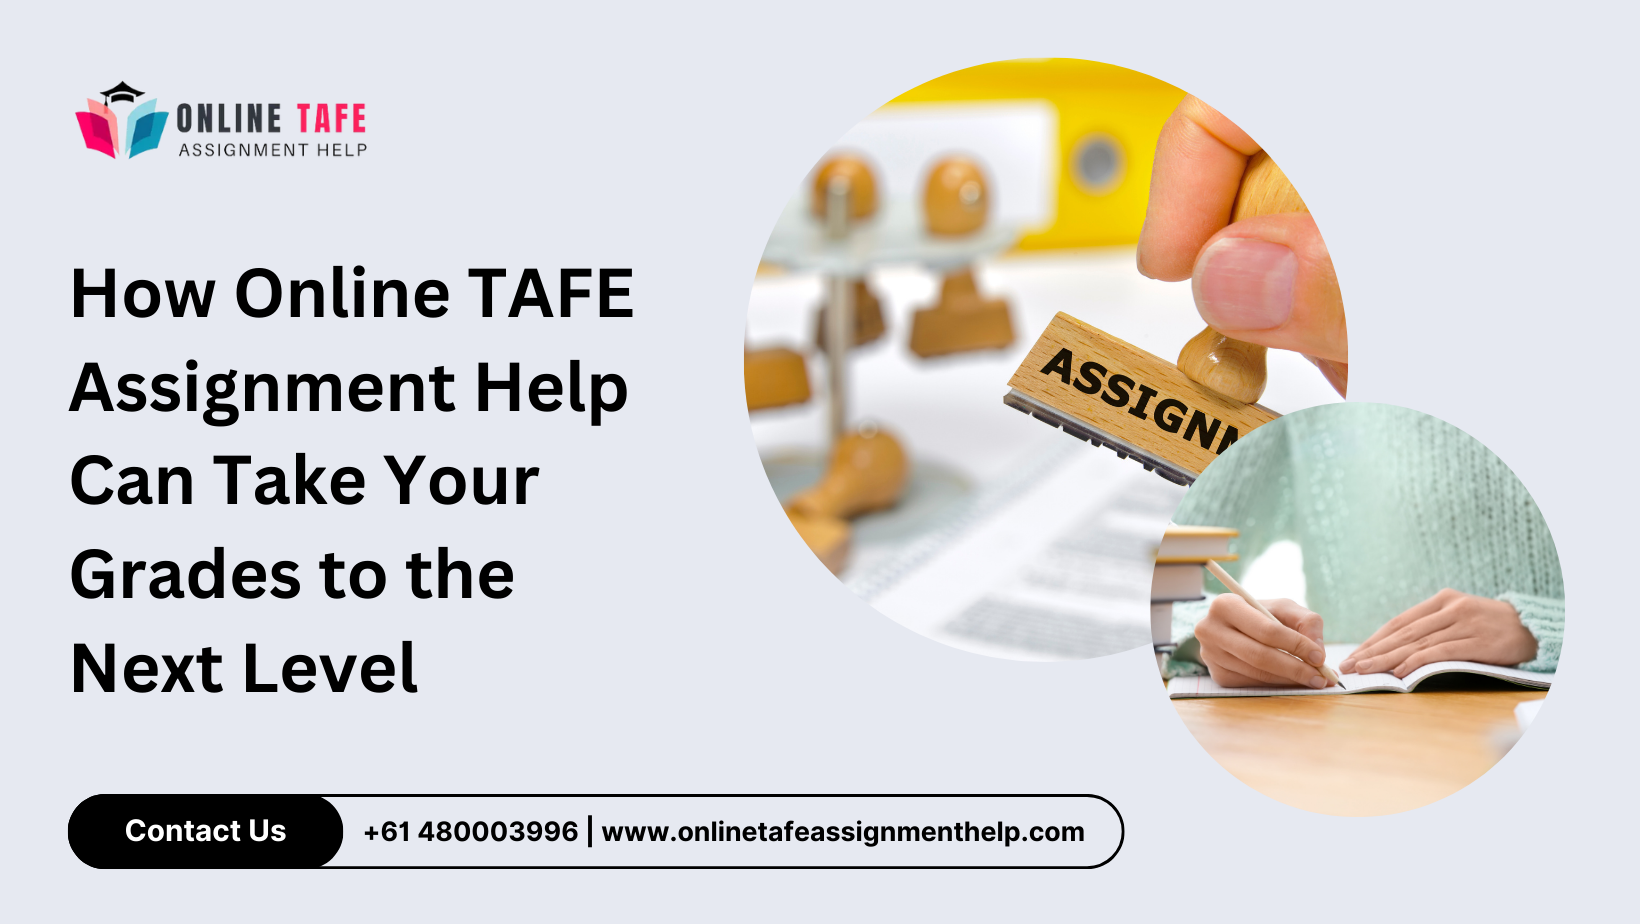 Online TAFE Assignment Help